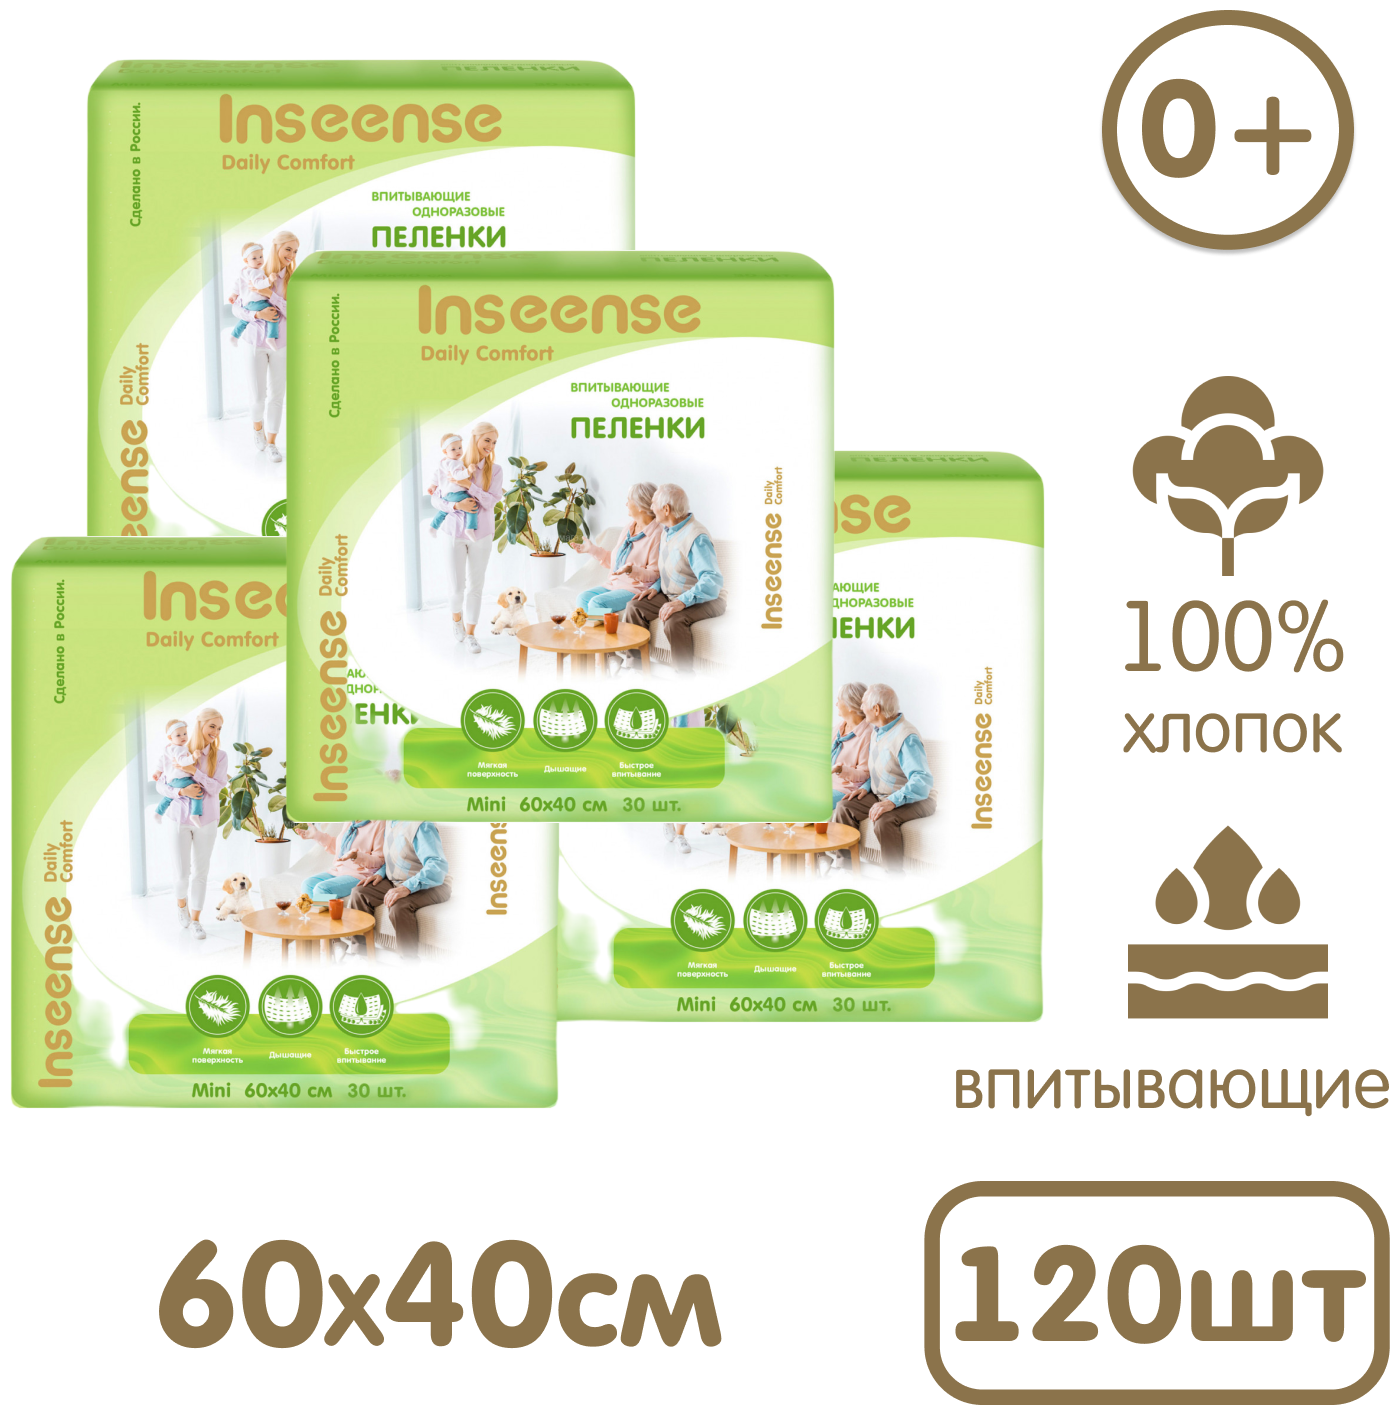 Пеленки одноразовые Inseense Daily Comfort 60 х 40 см 30 шт упаковка 4 шт